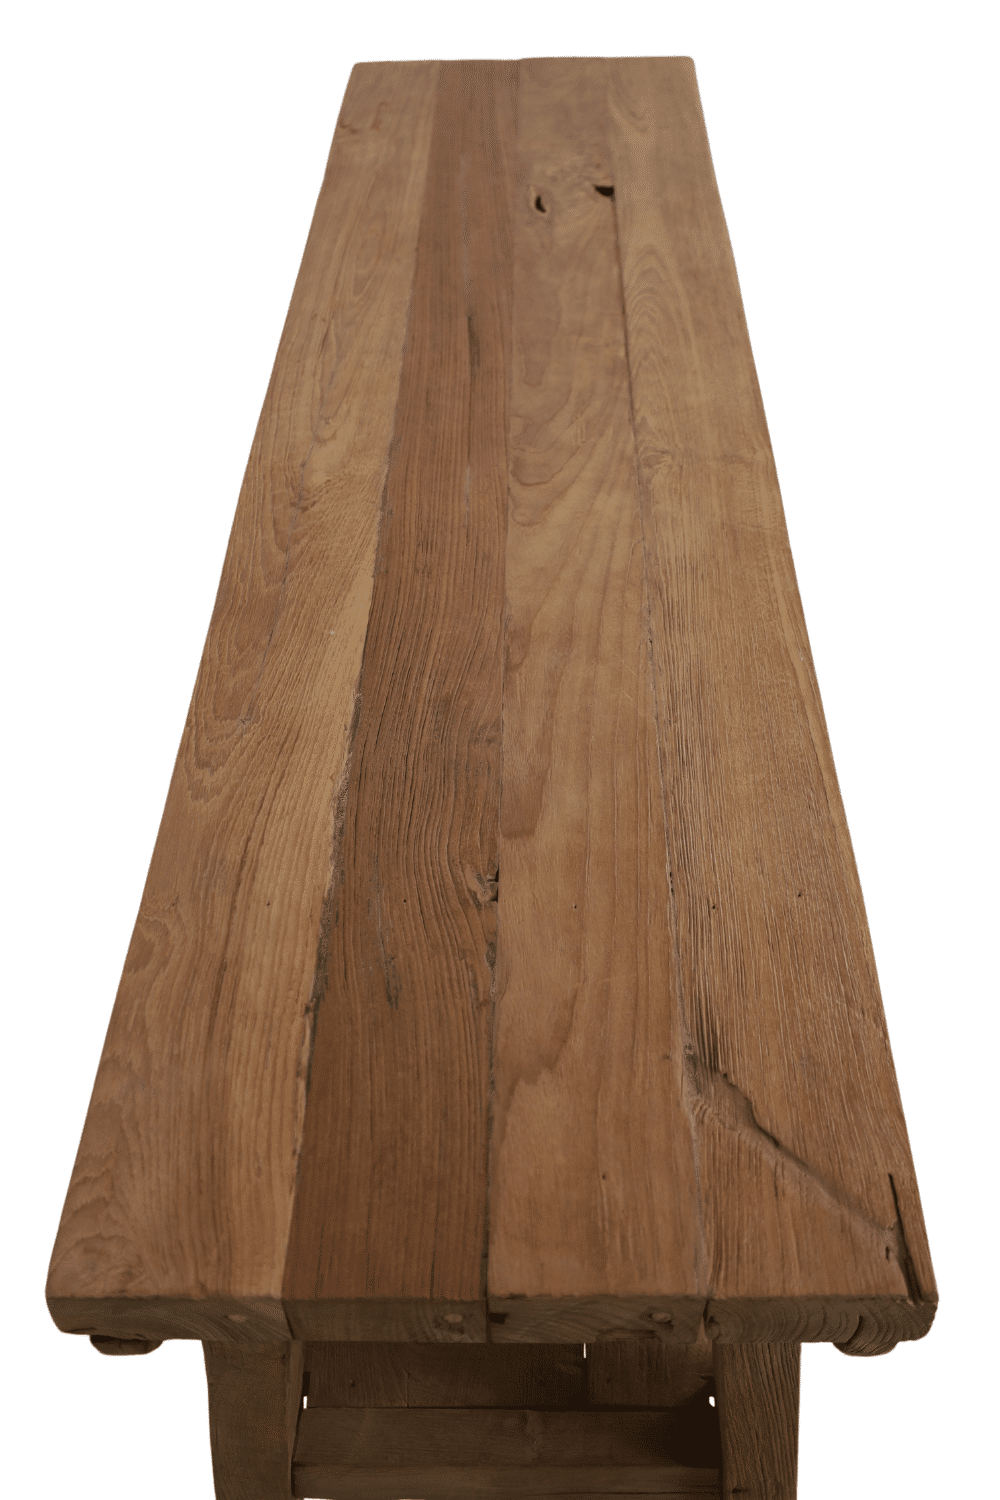 teak houten side table 150 cm